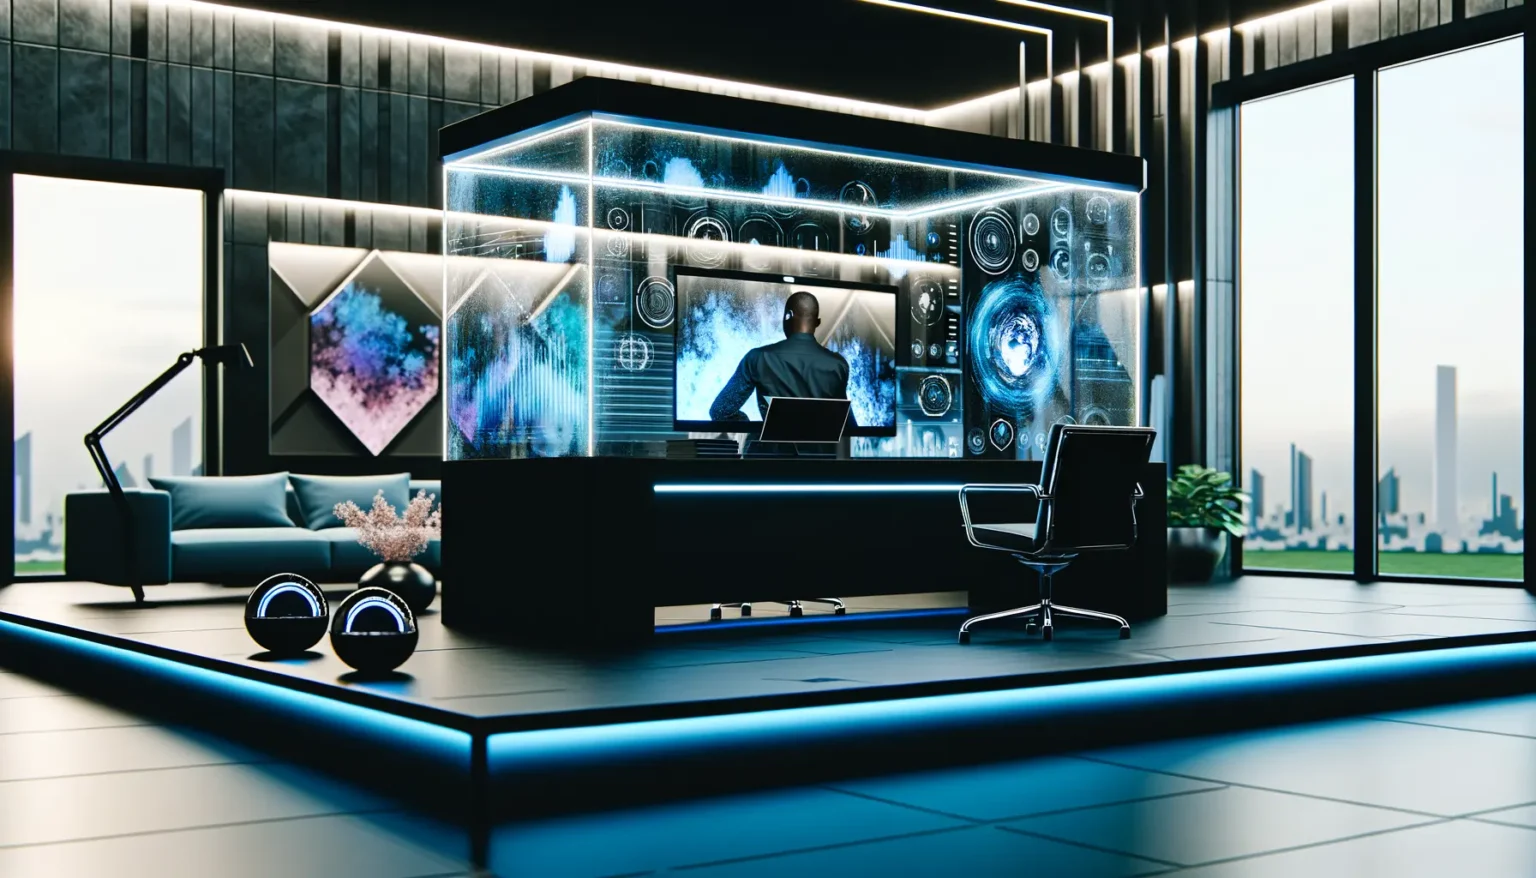 Ein modern gestaltetes Büro mit futuristischen Elementen, in dem eine Person von hinten gesehen an einem Schreibtisch mit einem mehrschichtigen, transparenten Computermonitor arbeitet. Das Büro verfügt über große Fenster mit Blick auf eine städtische Skyline, stilvolle Möbel und leuchtend blaue Akzentbeleuchtung.